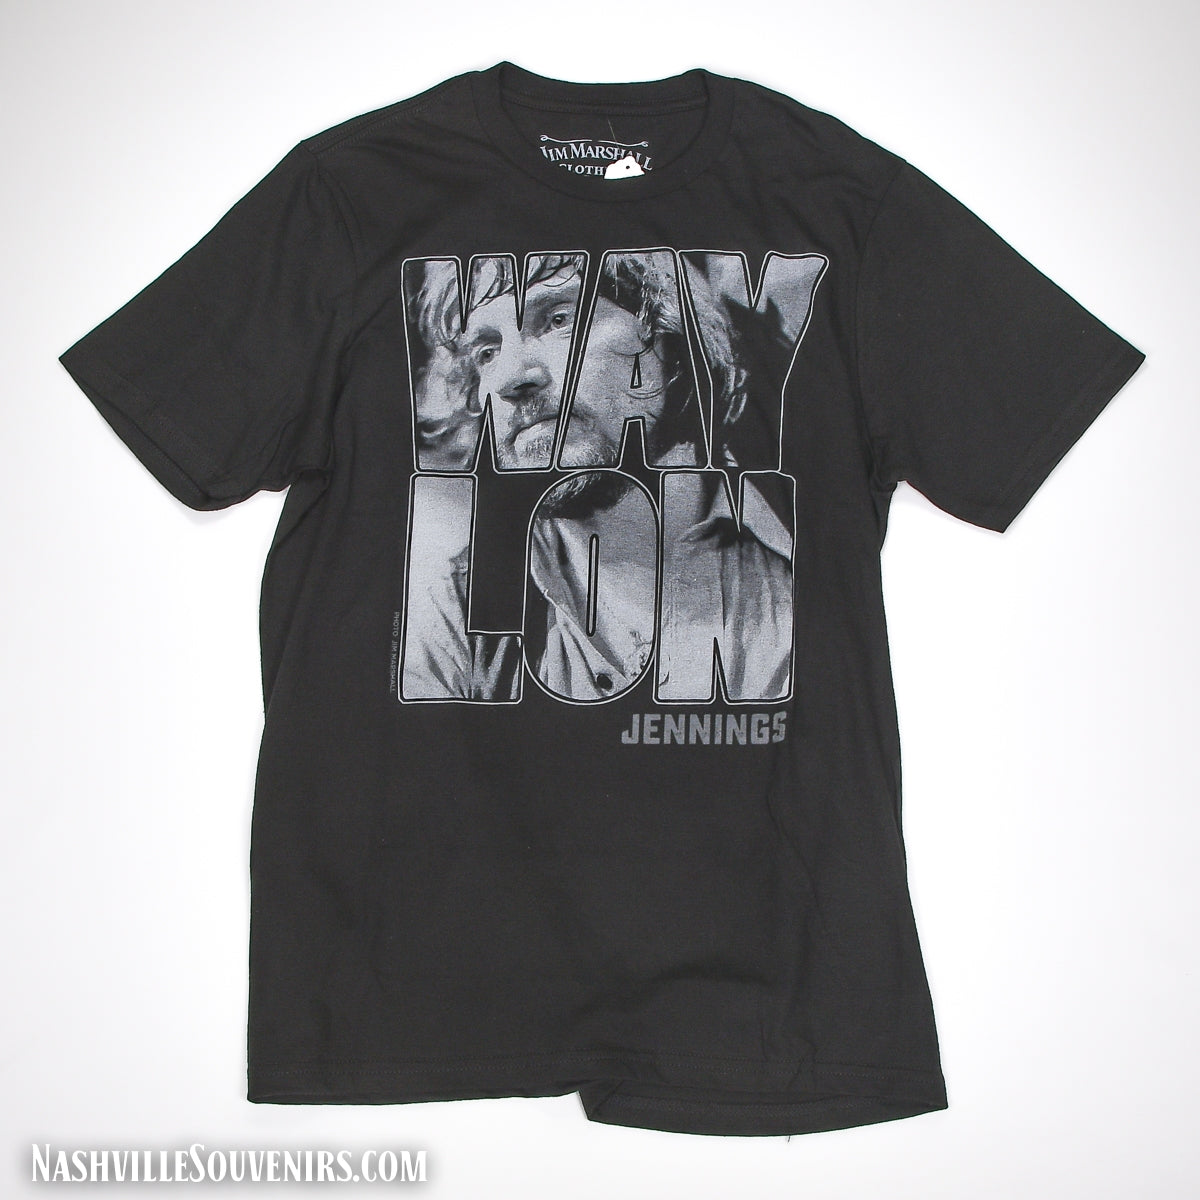 Waylon Jennings T-Shirt "Waylon" Photo and Logo